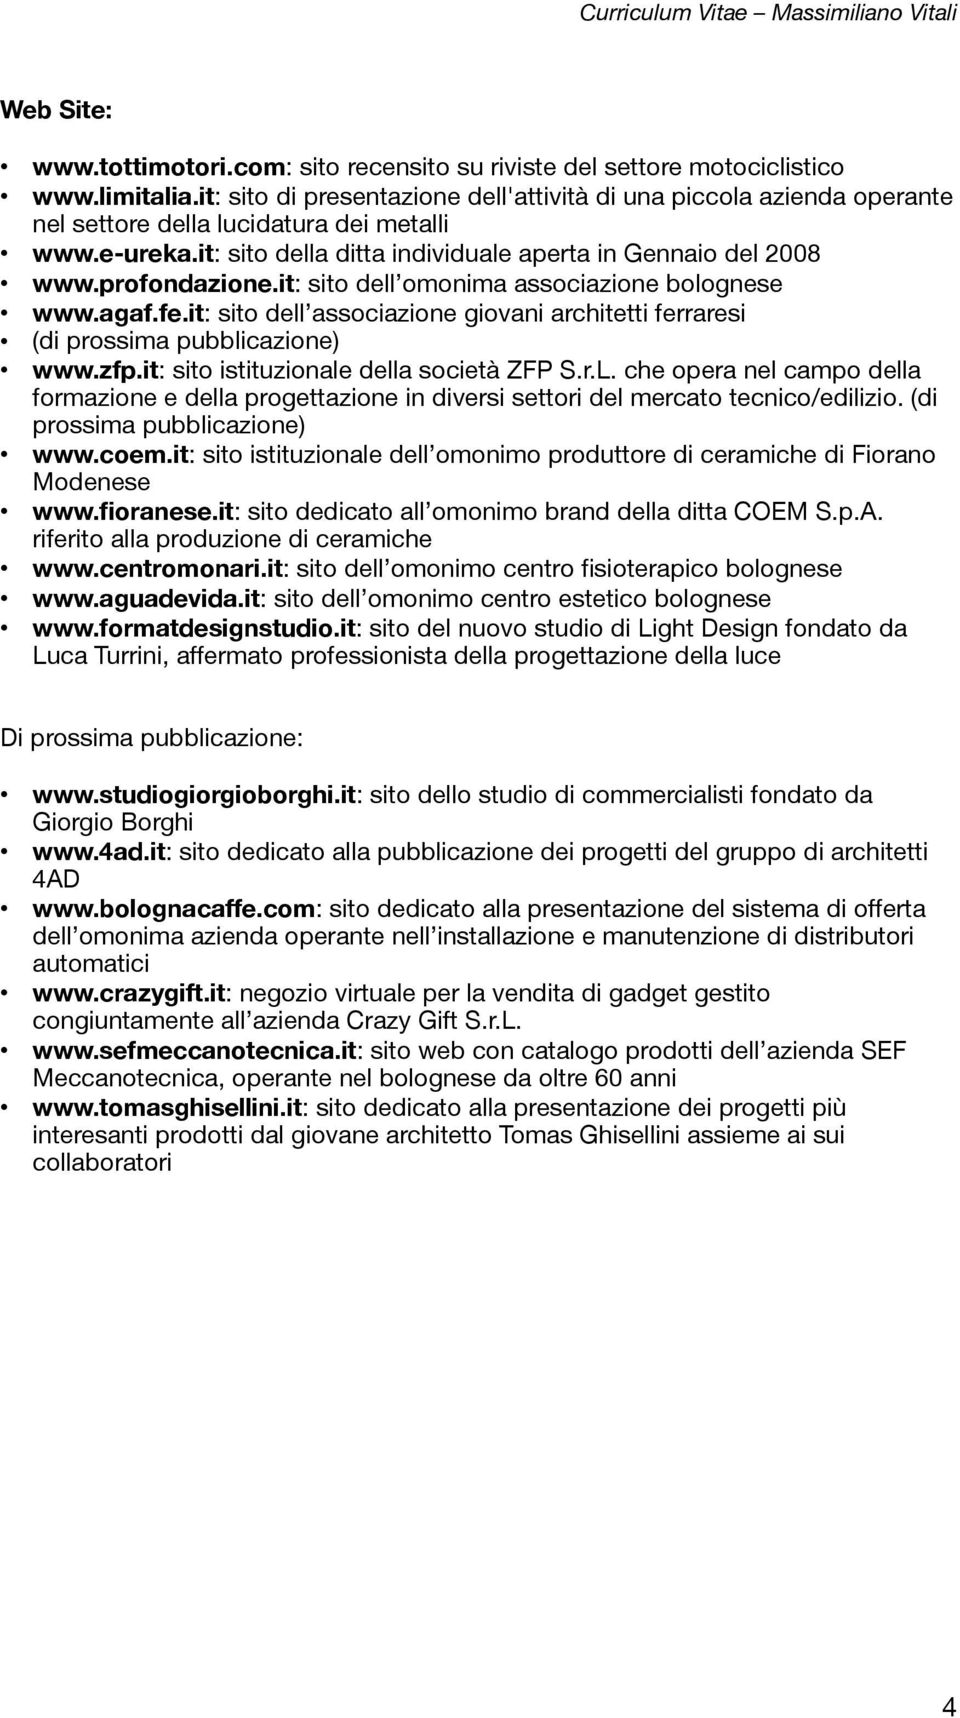 profondazione.it: sito dell omonima associazione bolognese www.agaf.fe.it: sito dell associazione giovani architetti ferraresi (di prossima pubblicazione) www.zfp.